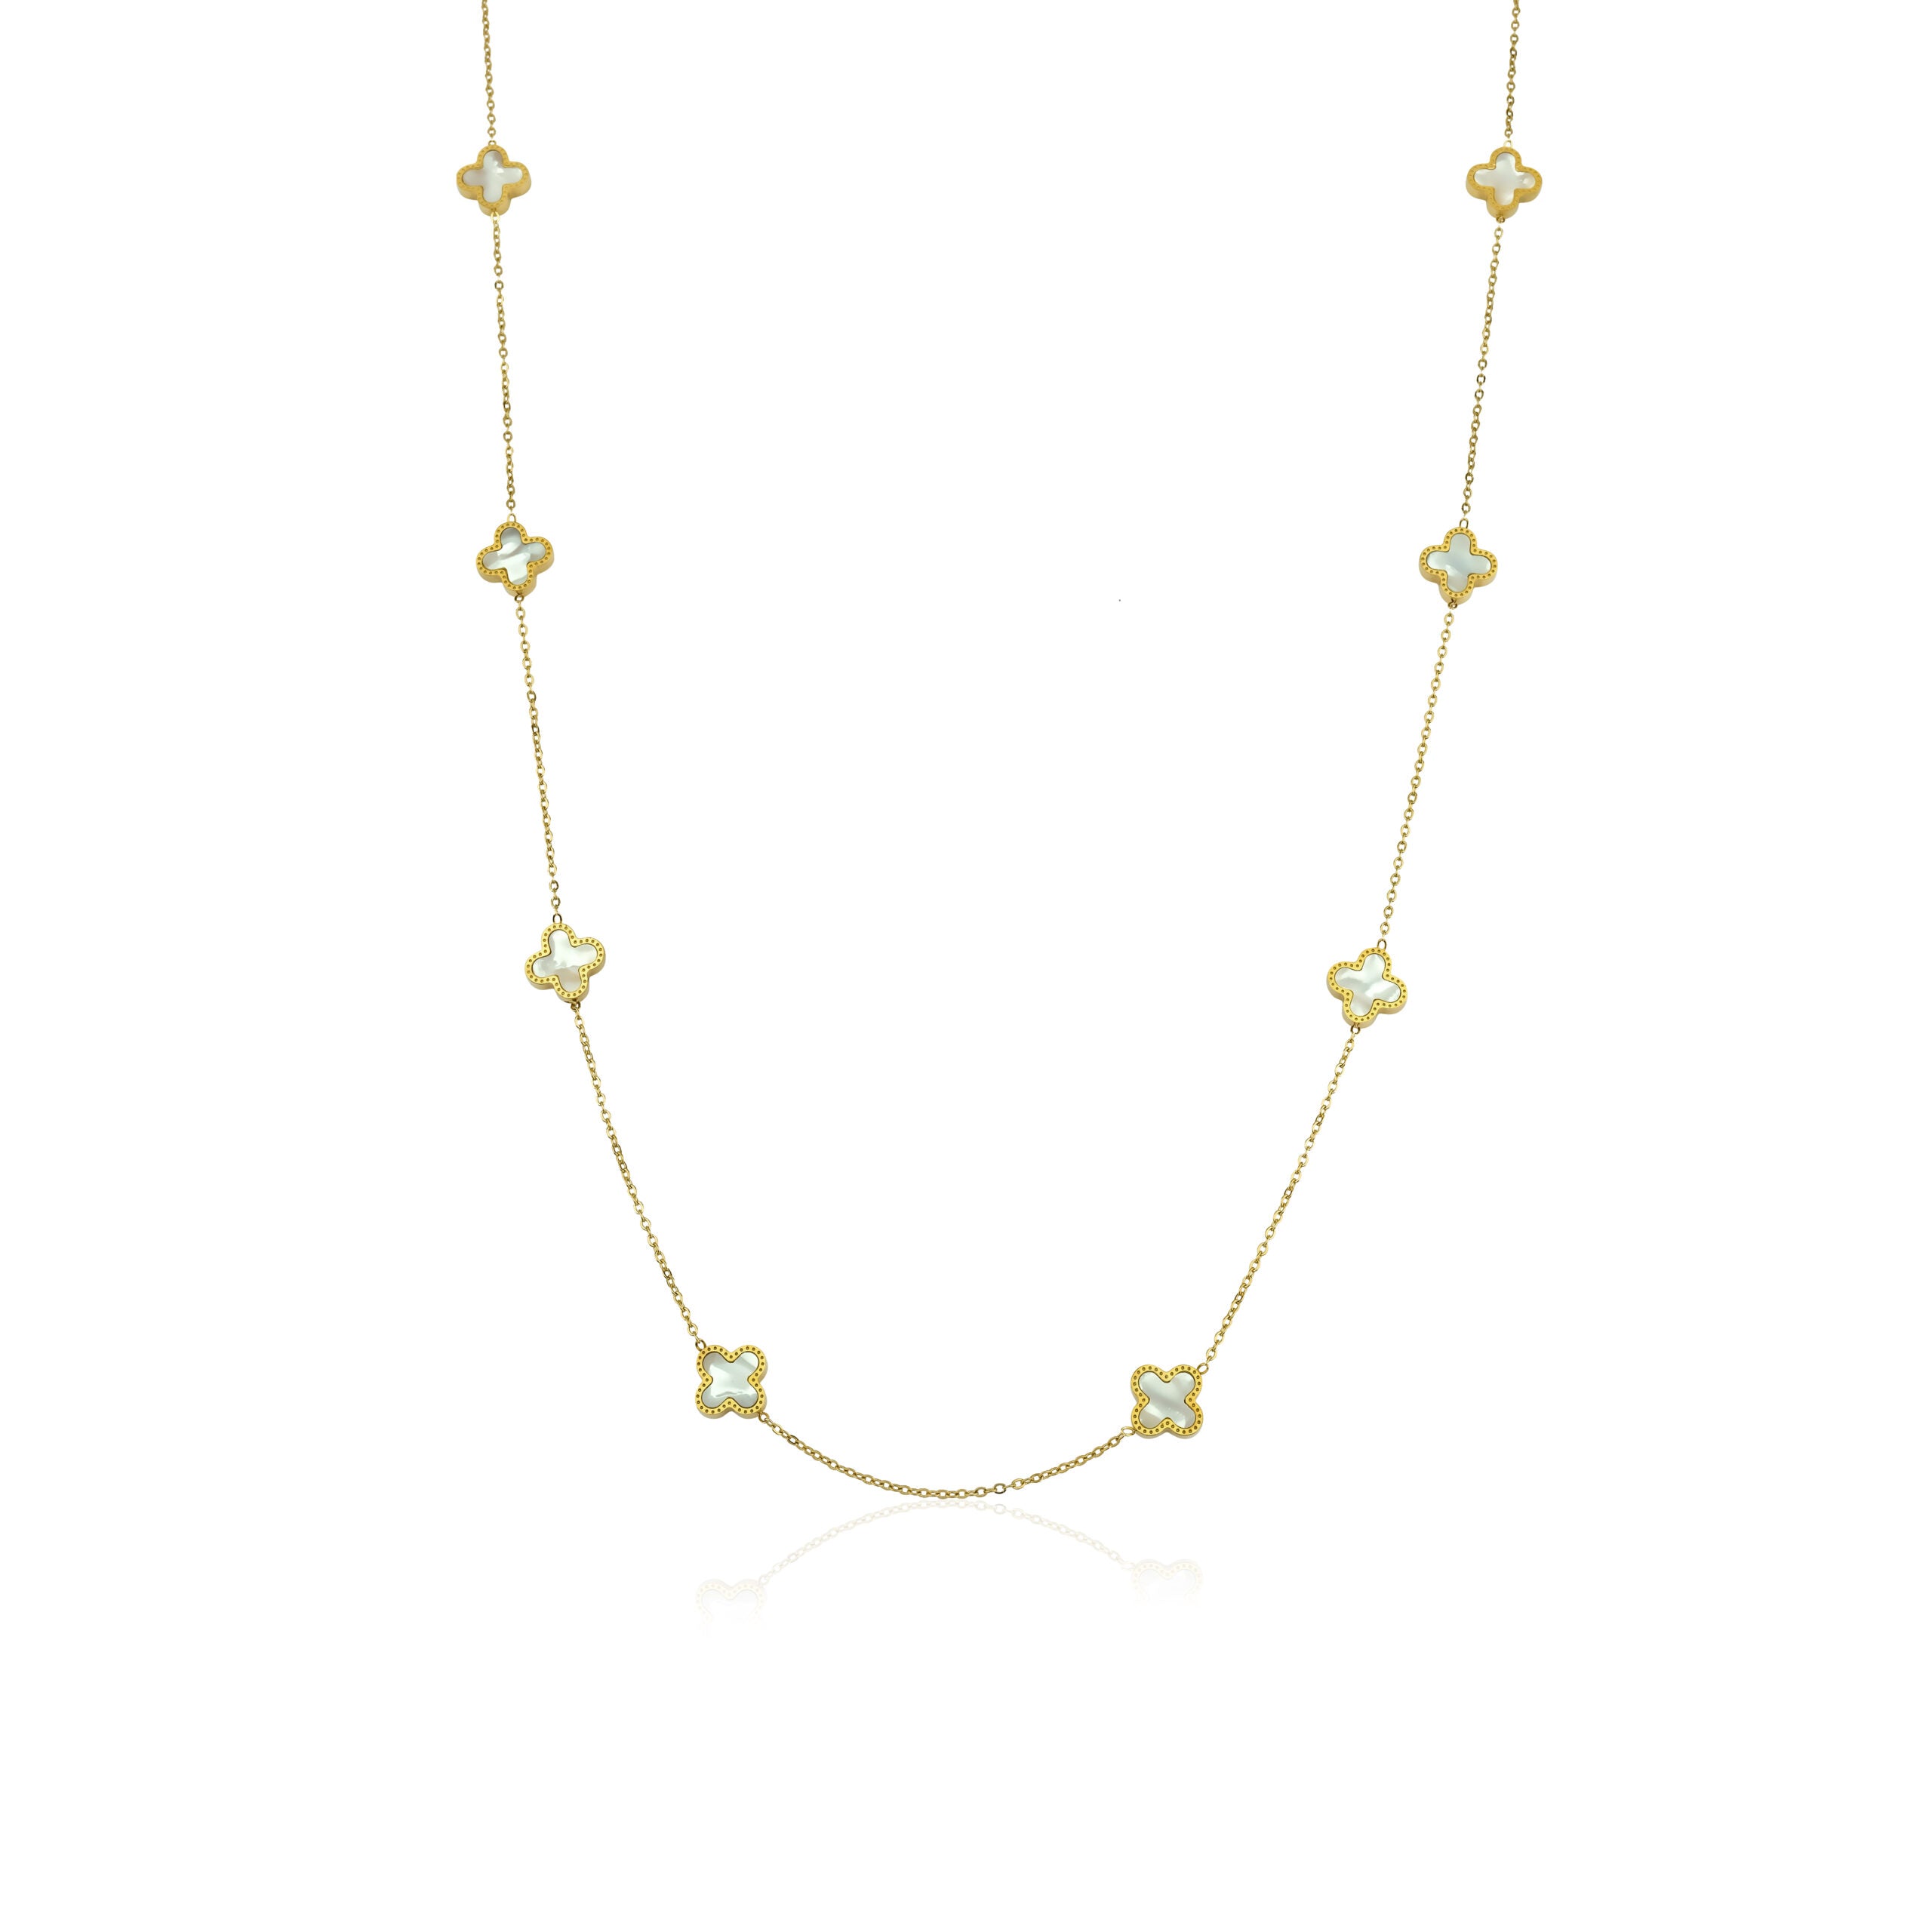 Necklace 8 Clover (70-74cm)